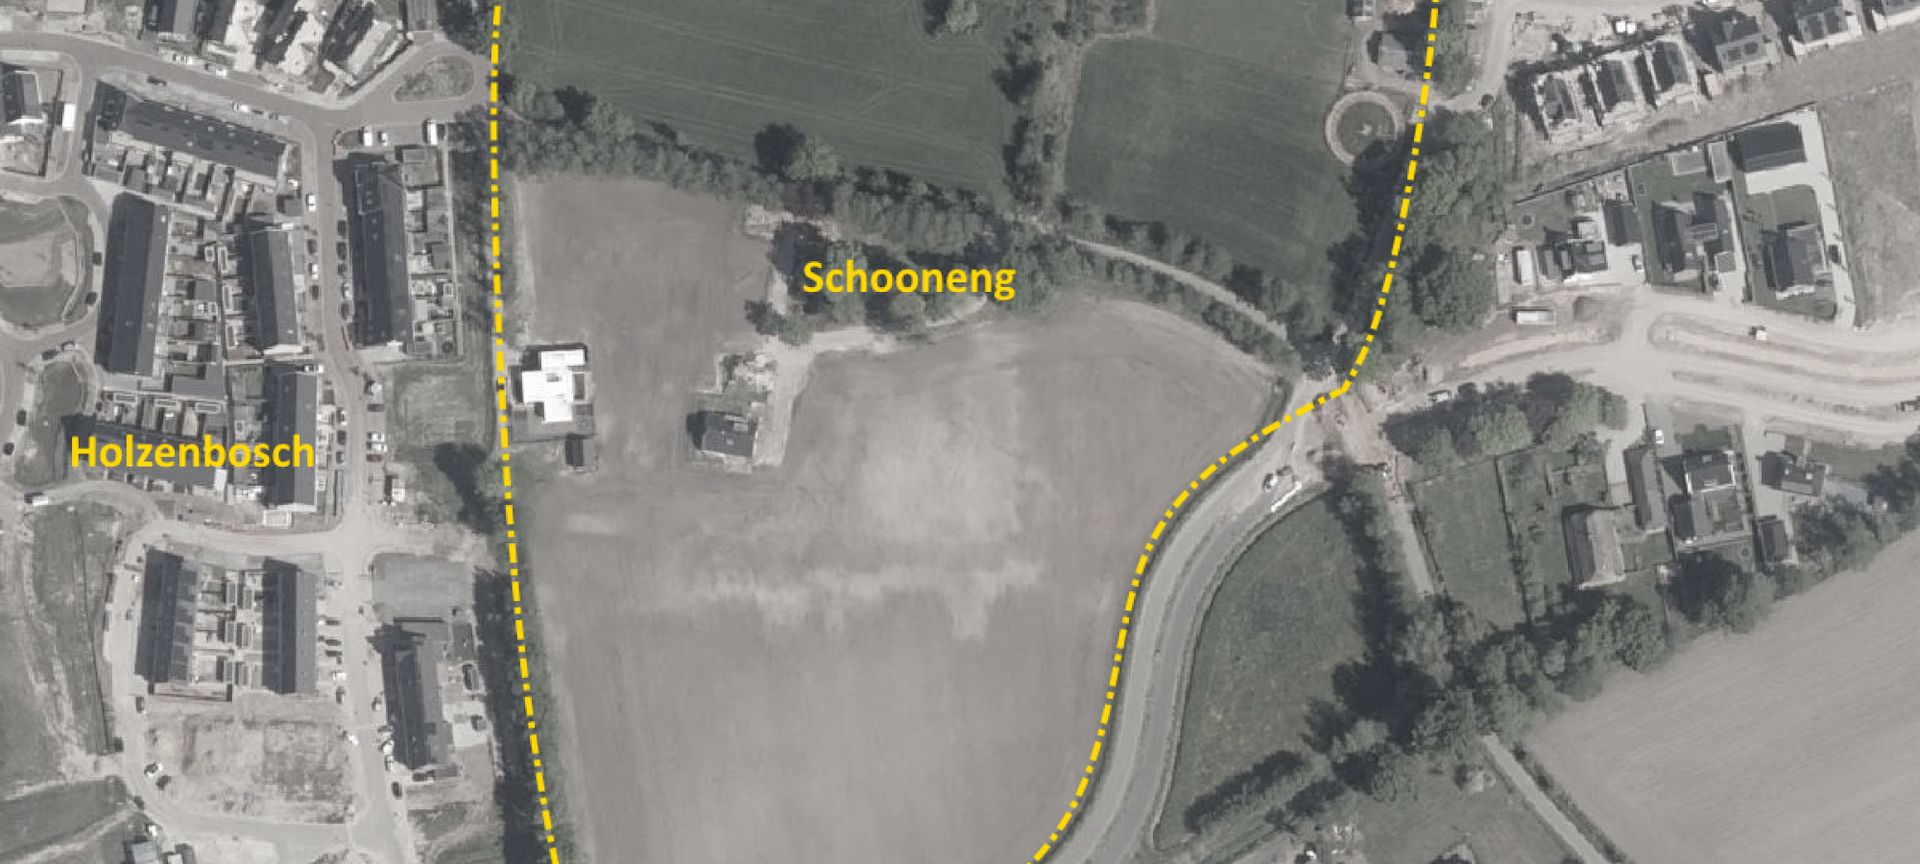 locatie Schooneng